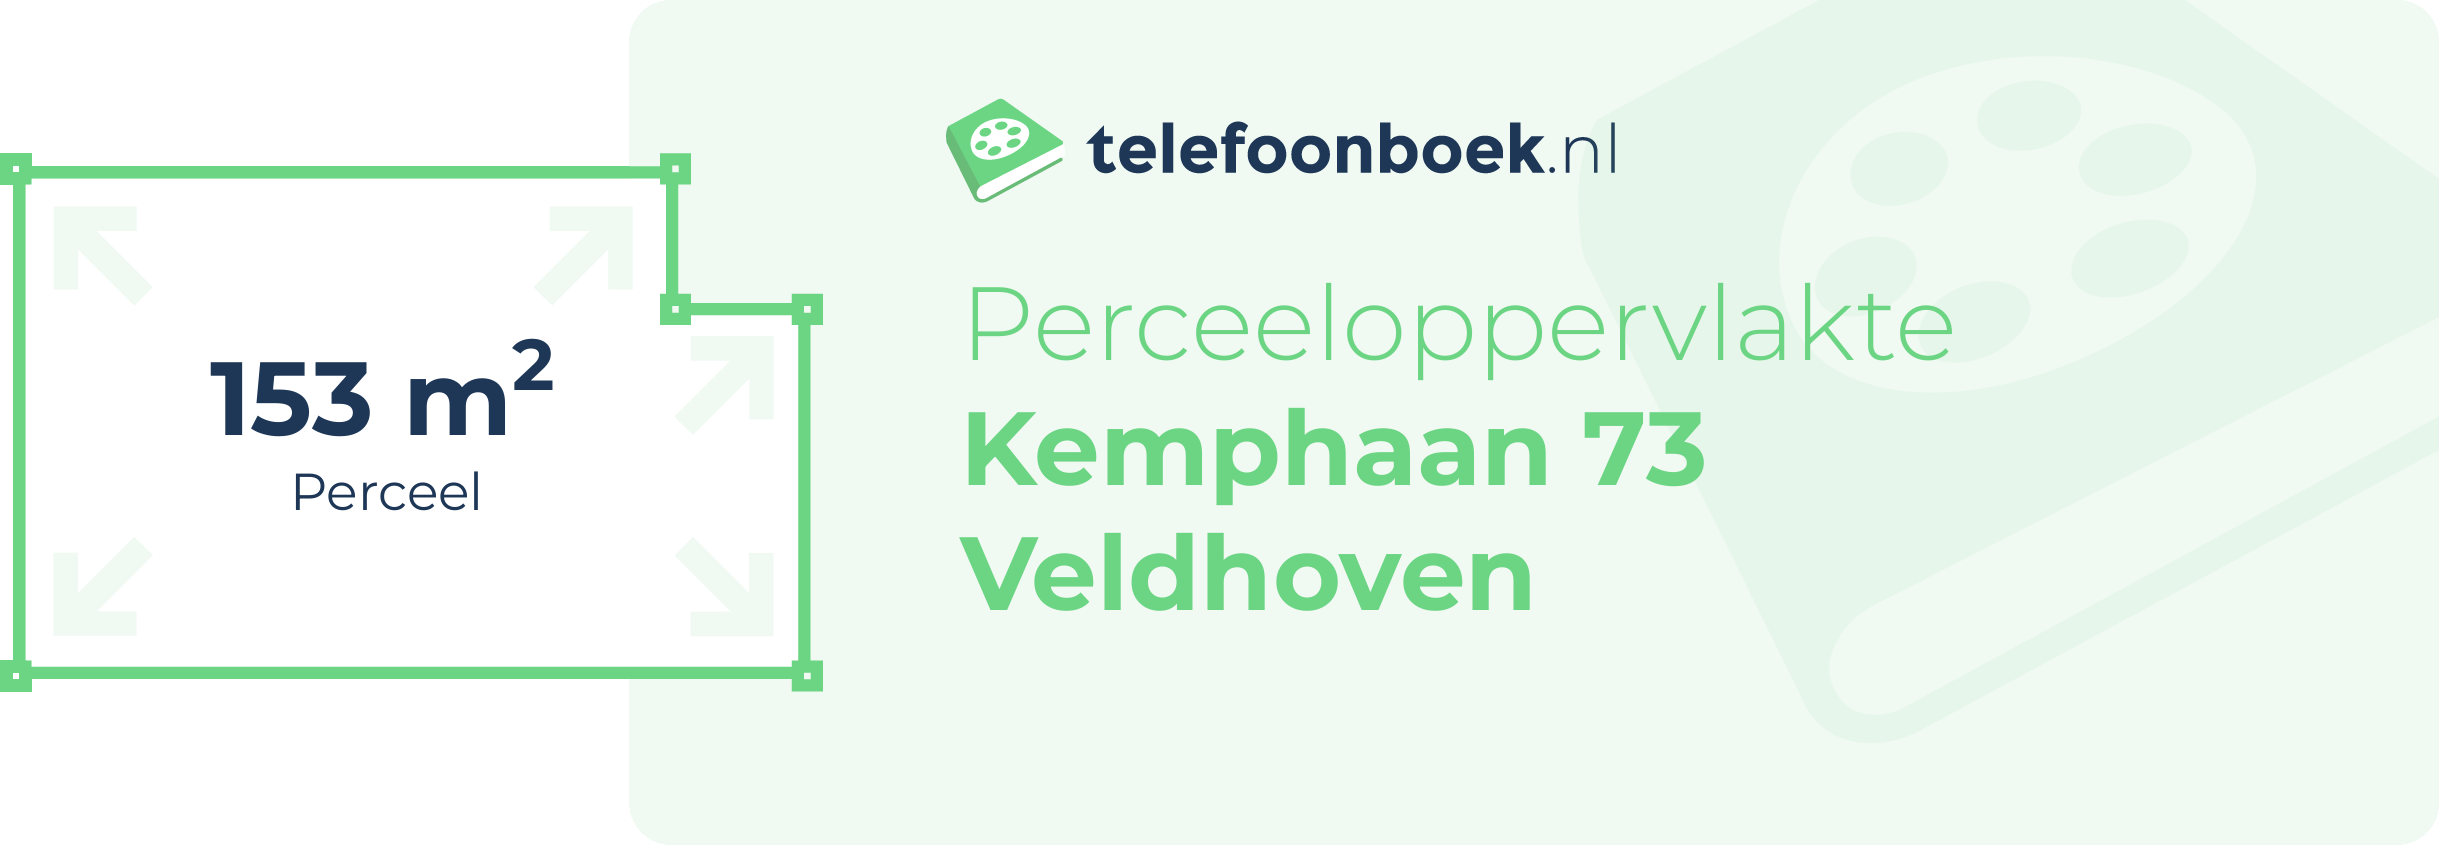 Perceeloppervlakte Kemphaan 73 Veldhoven